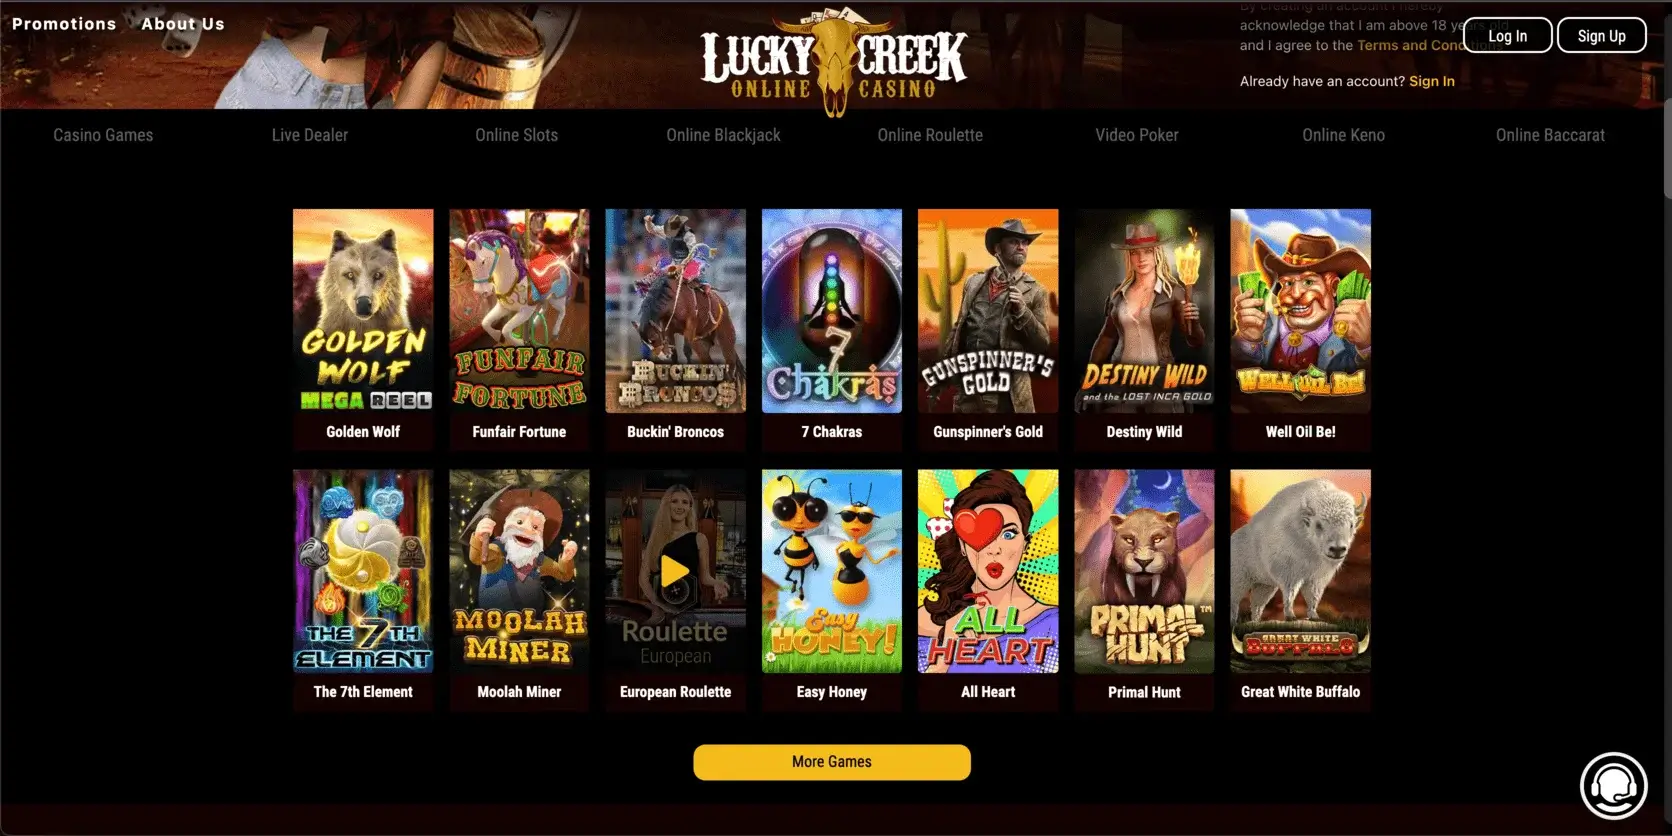 Lucky Creek Online Casino Software